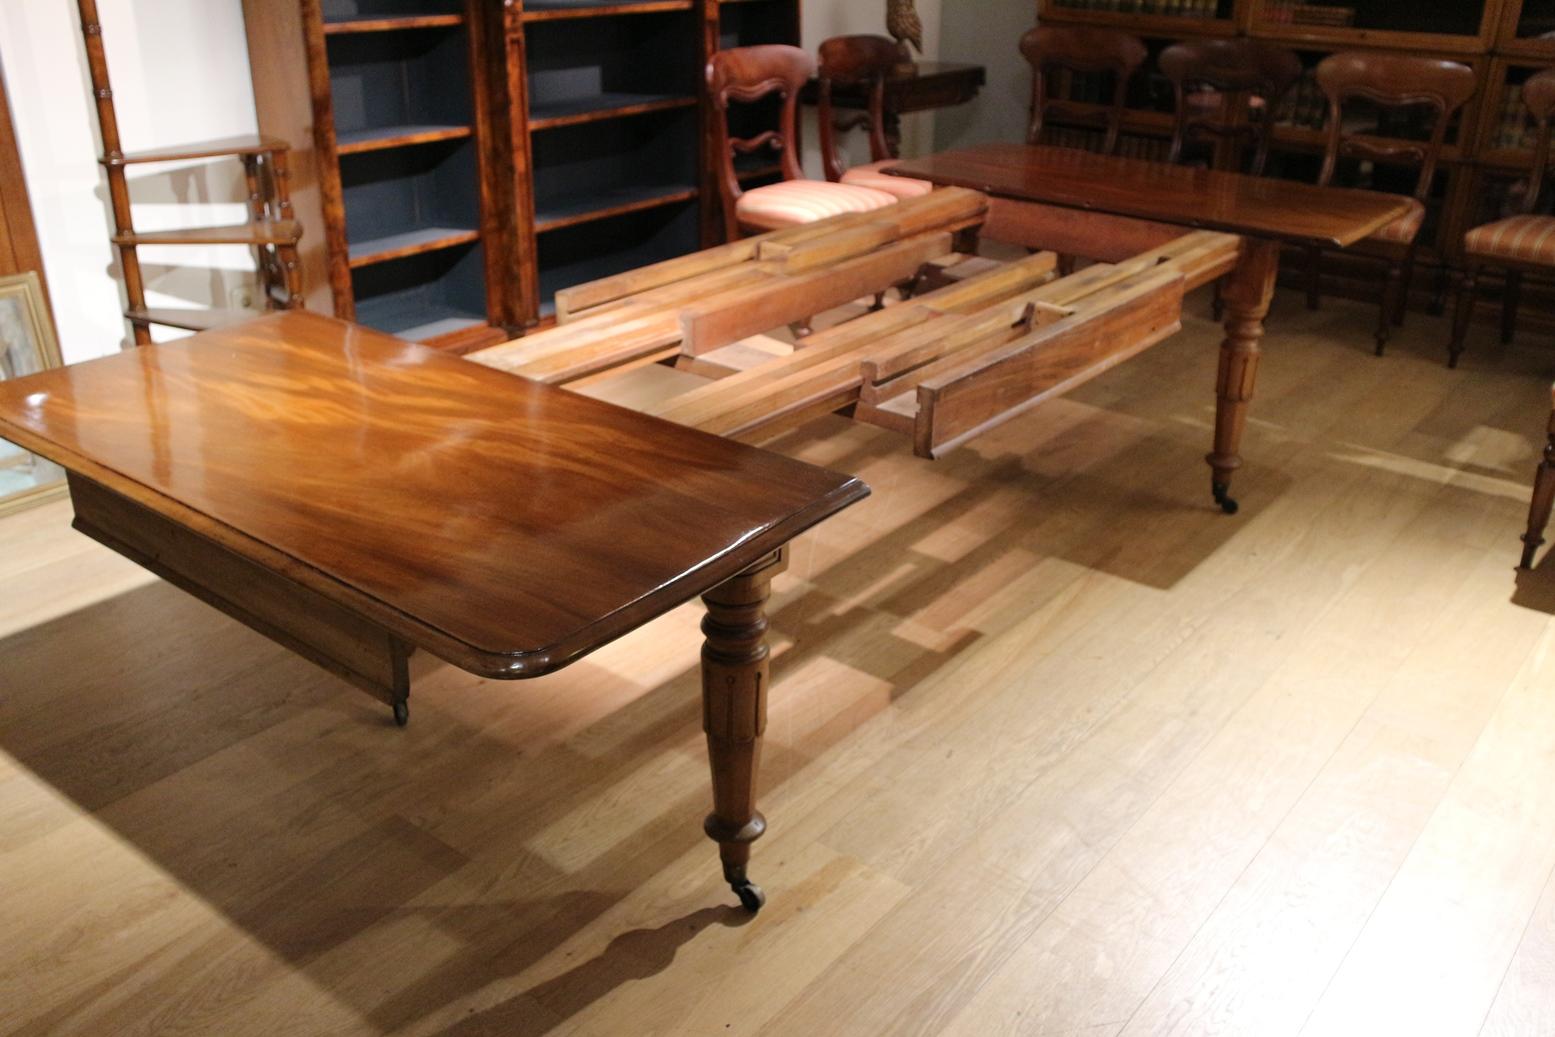 Schöner beeindruckender englischer Mahagoni-Esszimmertisch in gutem Originalzustand. Der Tisch hat 3 (originale) Platten, die verschiedene Konfigurationen ermöglichen. Es handelt sich um ein Schiebesystem, bei dem man zunächst das Untergestell